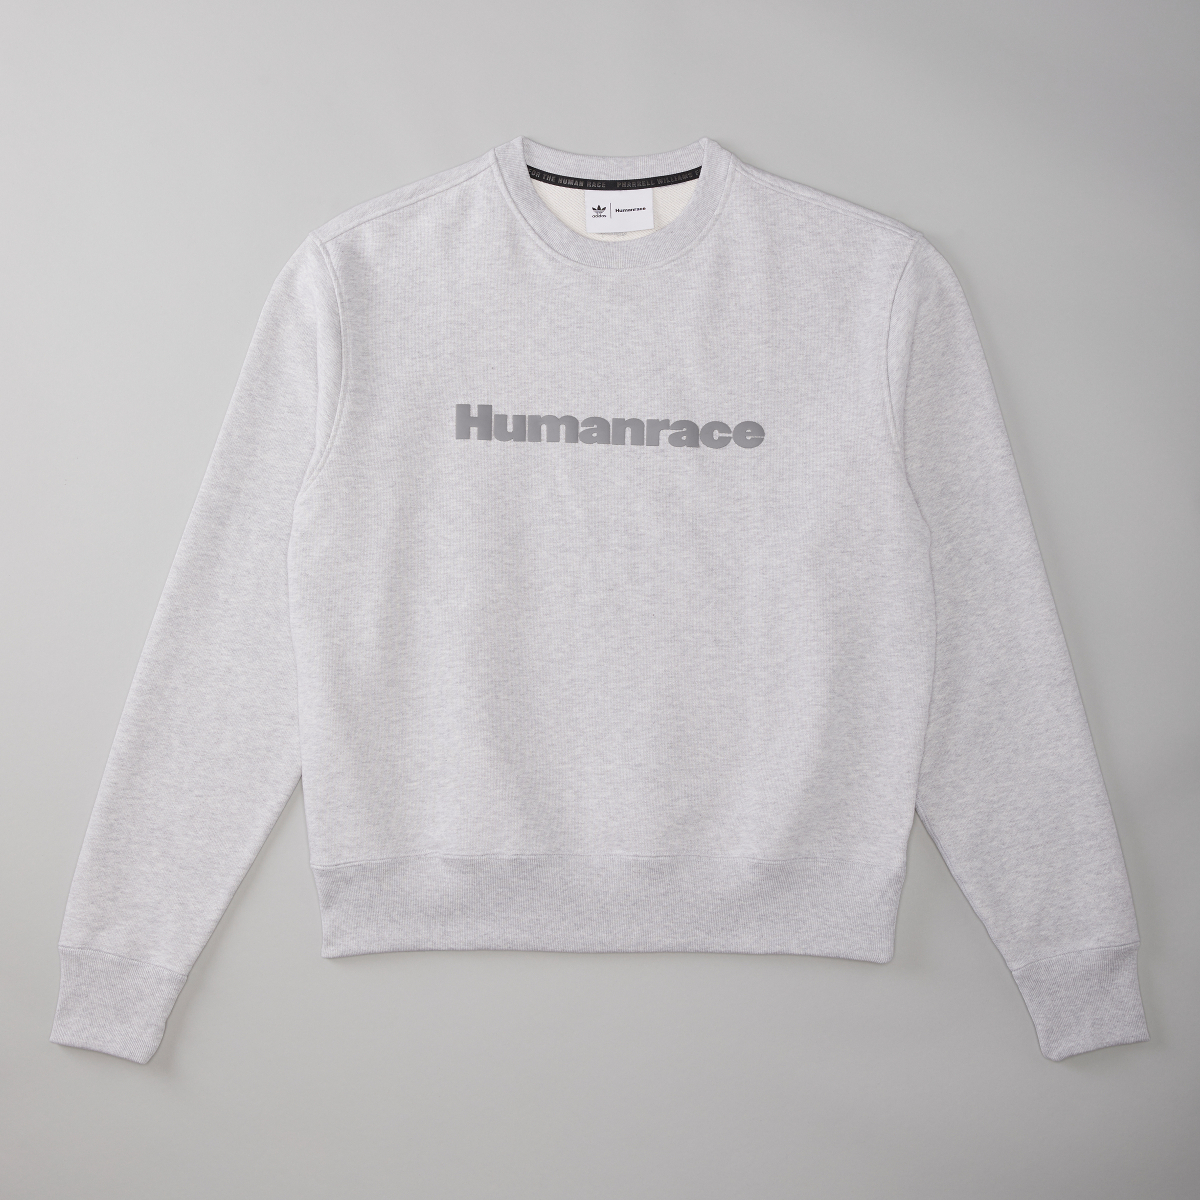 adidas Originals e Pharrell Williams lanciano la loro collezione unisex Humanrace Premium Basics